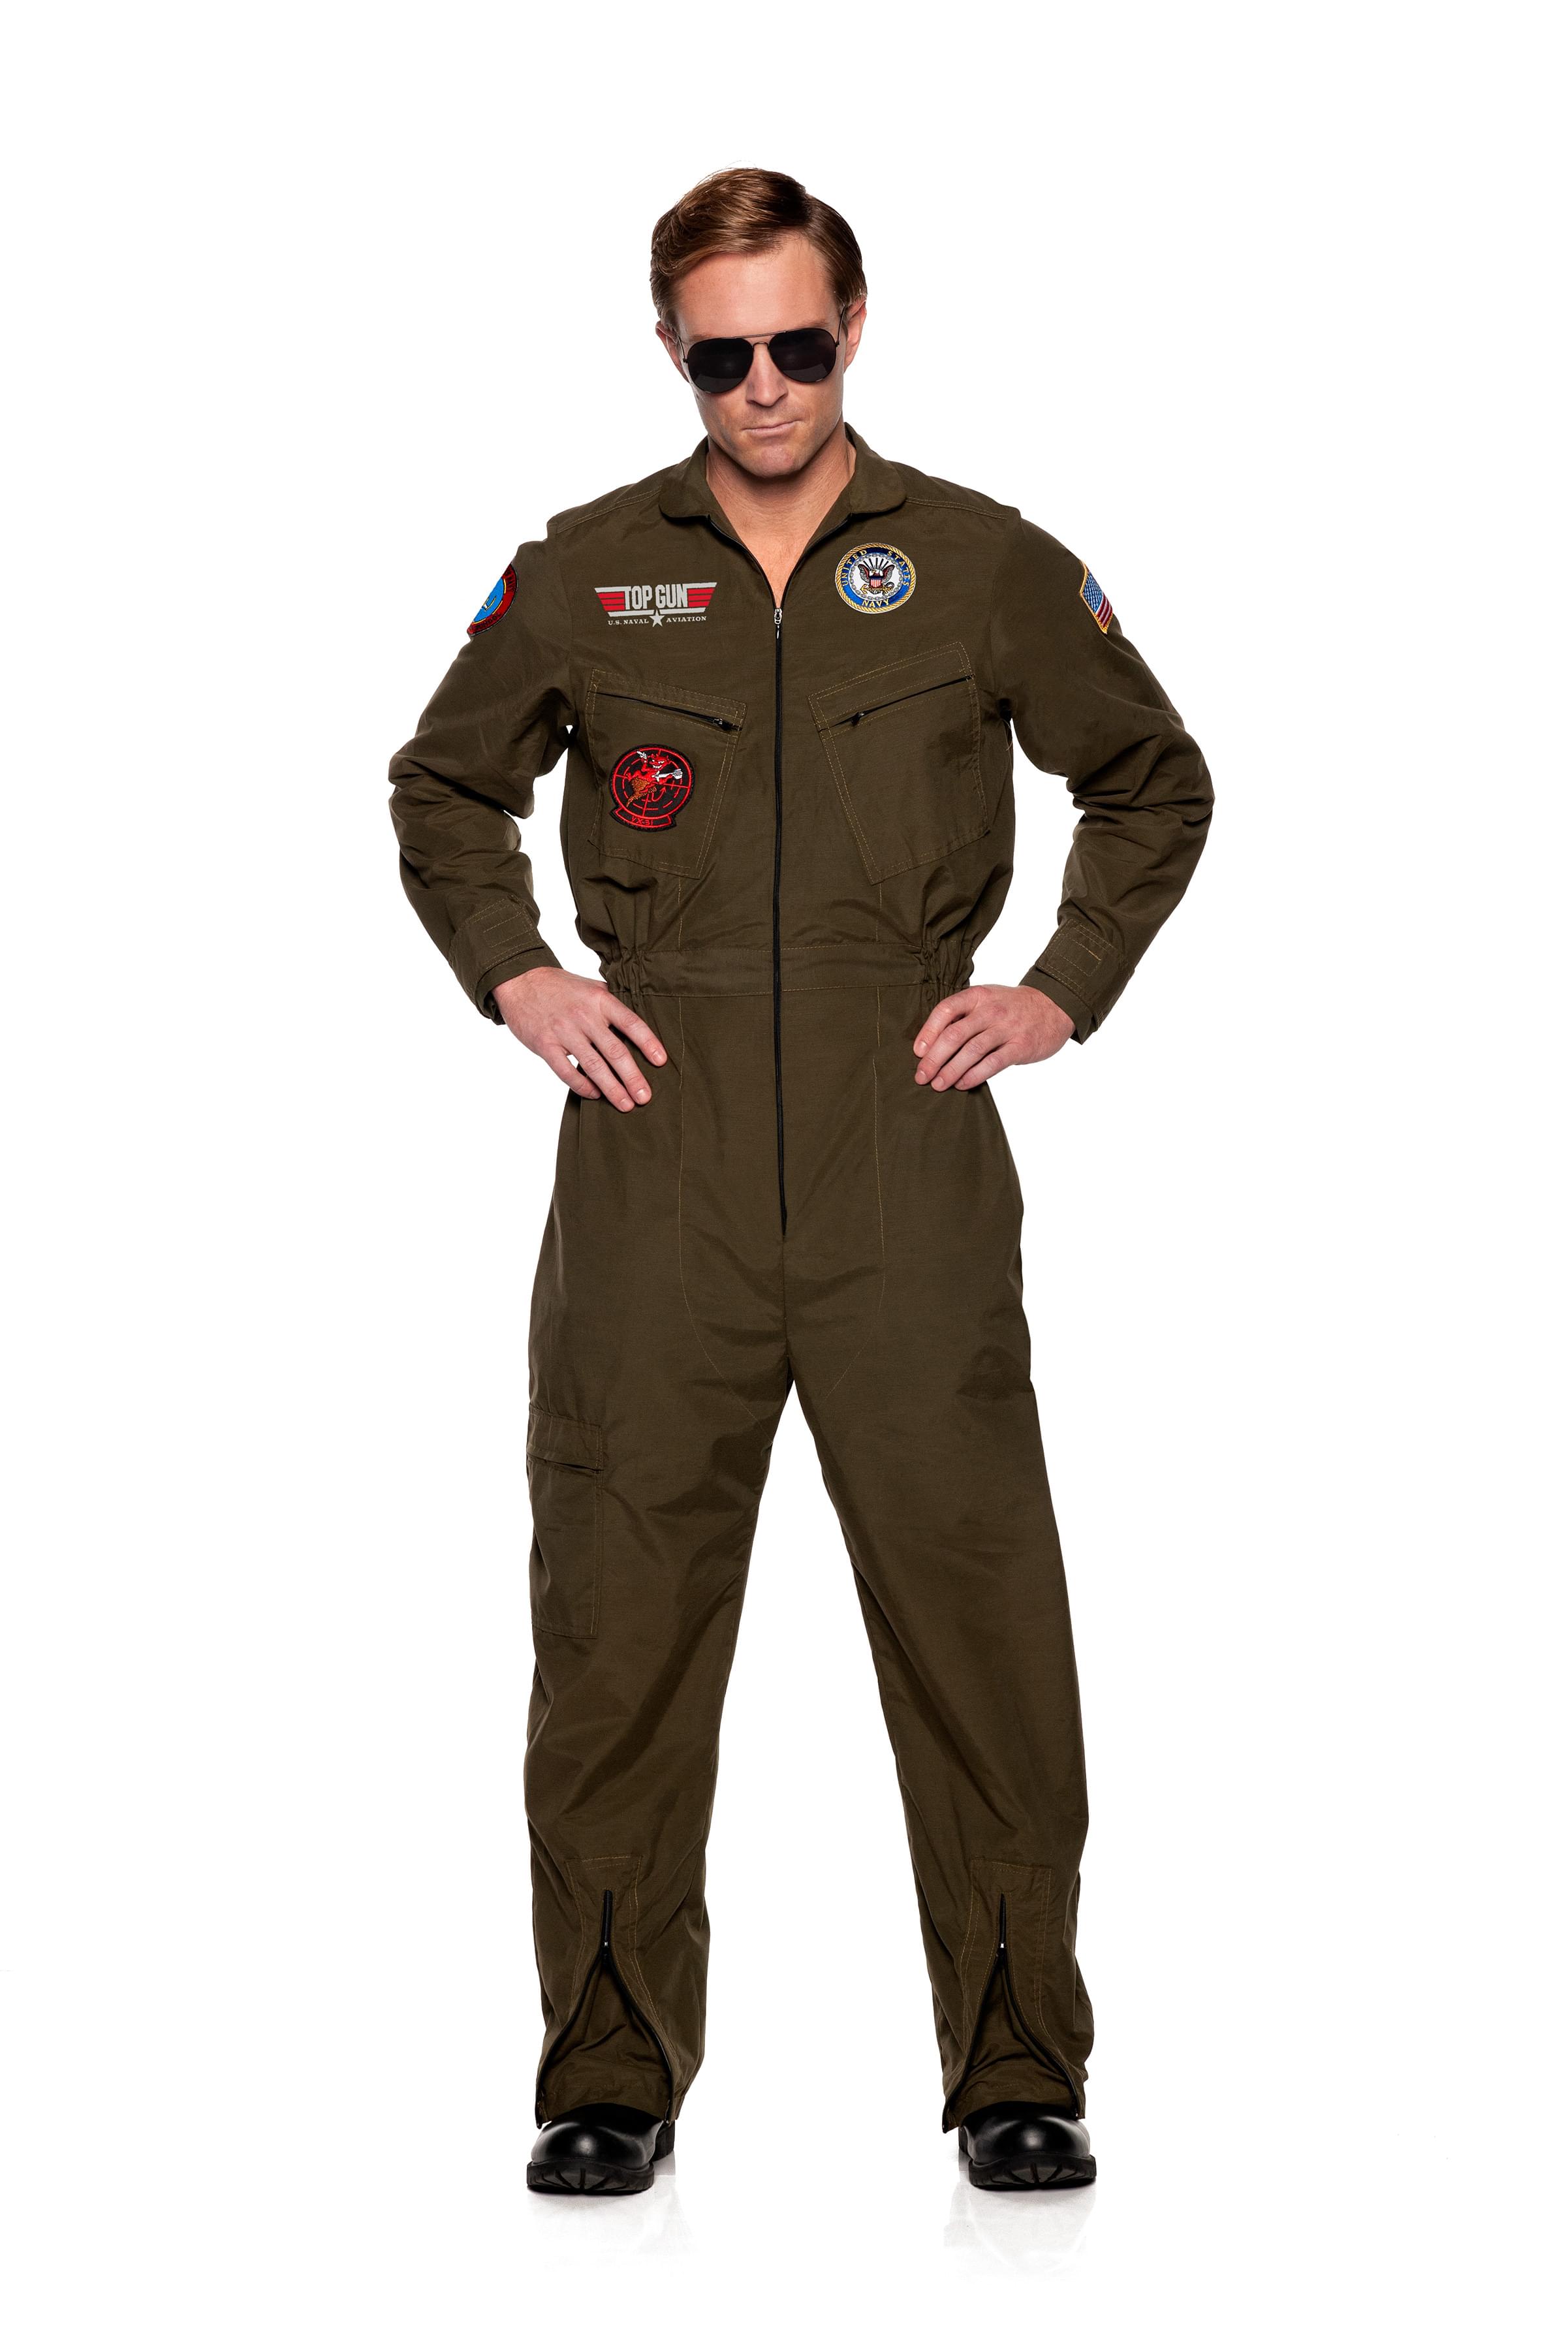 Photos - Fancy Dress NAVY Top Gun Men's Pilot Jumpsuit Adult Costume UDW-30544XXL-C 